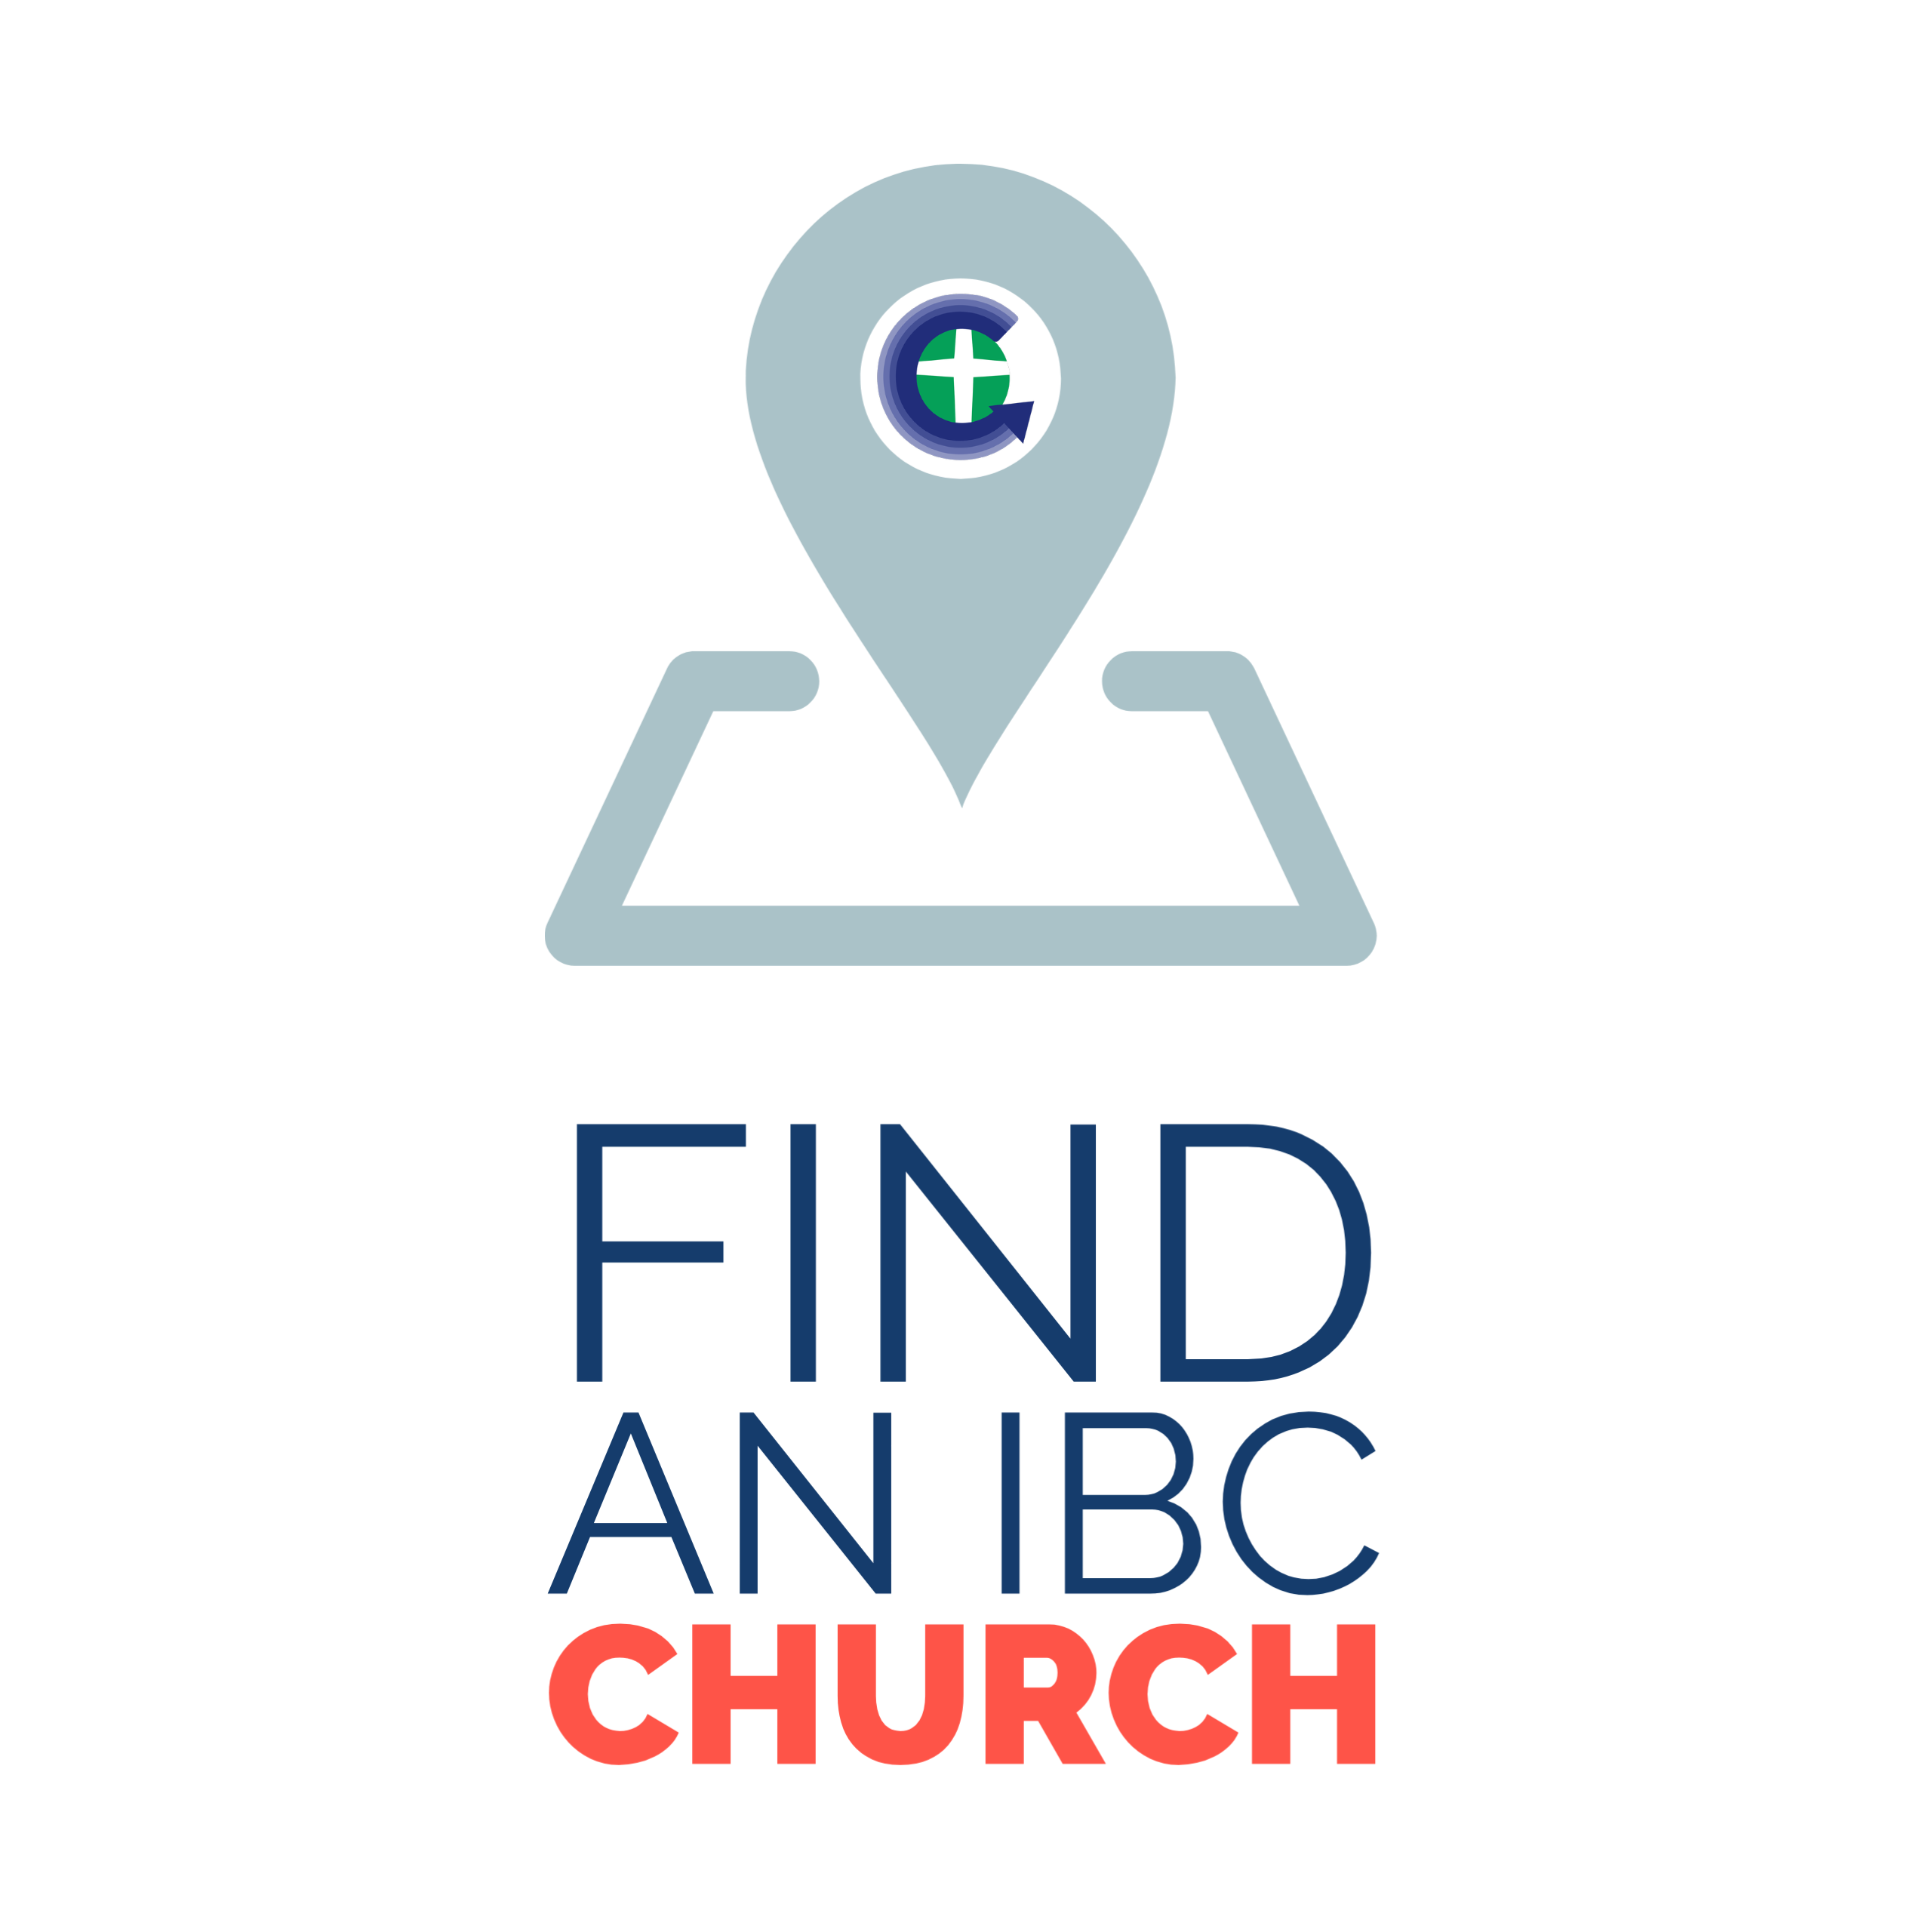 Find an IBC Church